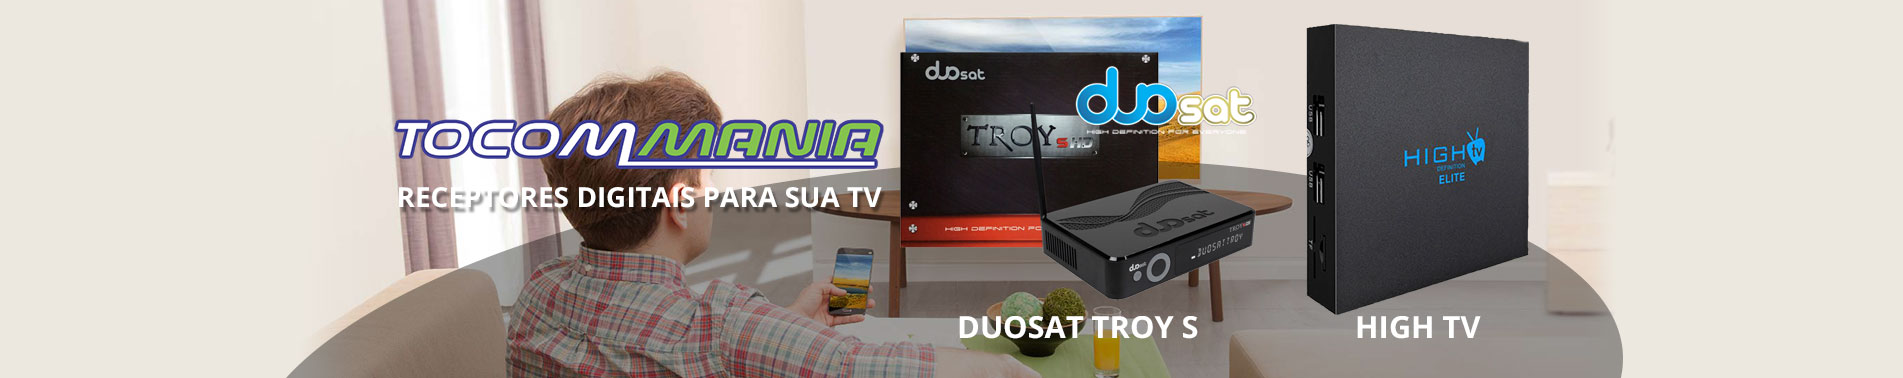 Receptores e Desbloqueadores DuoSat Troy S e high tv